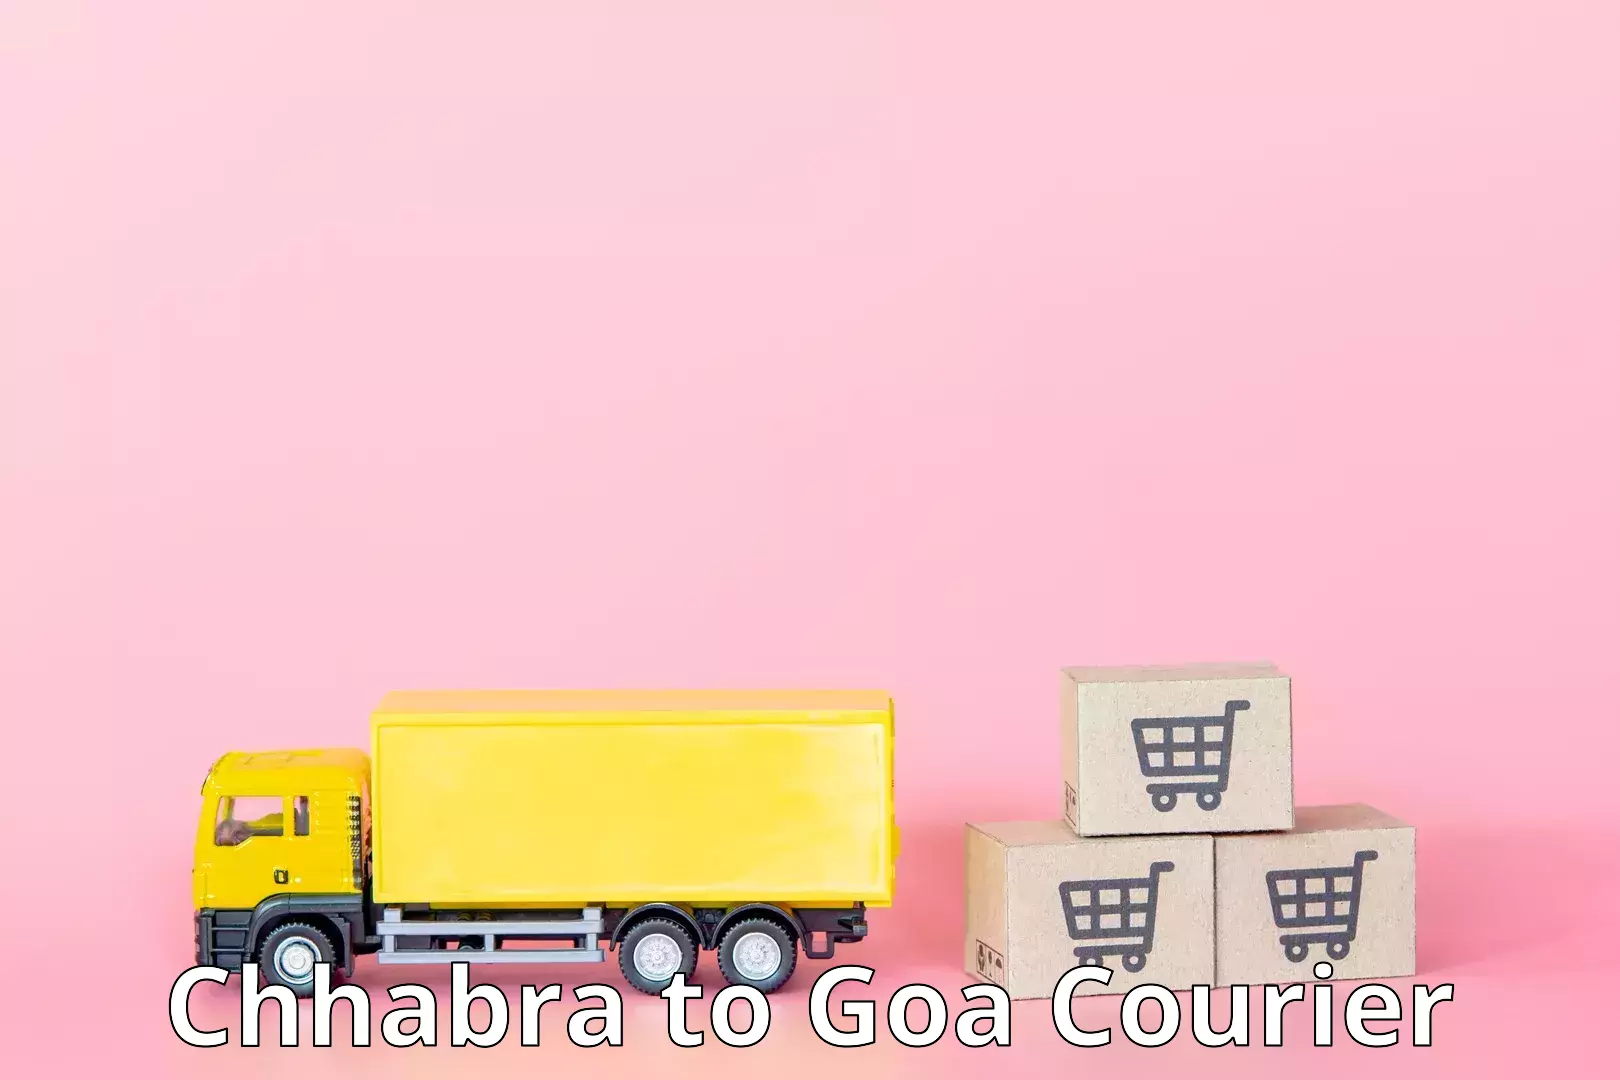 High-capacity parcel service Chhabra to Mormugao Port